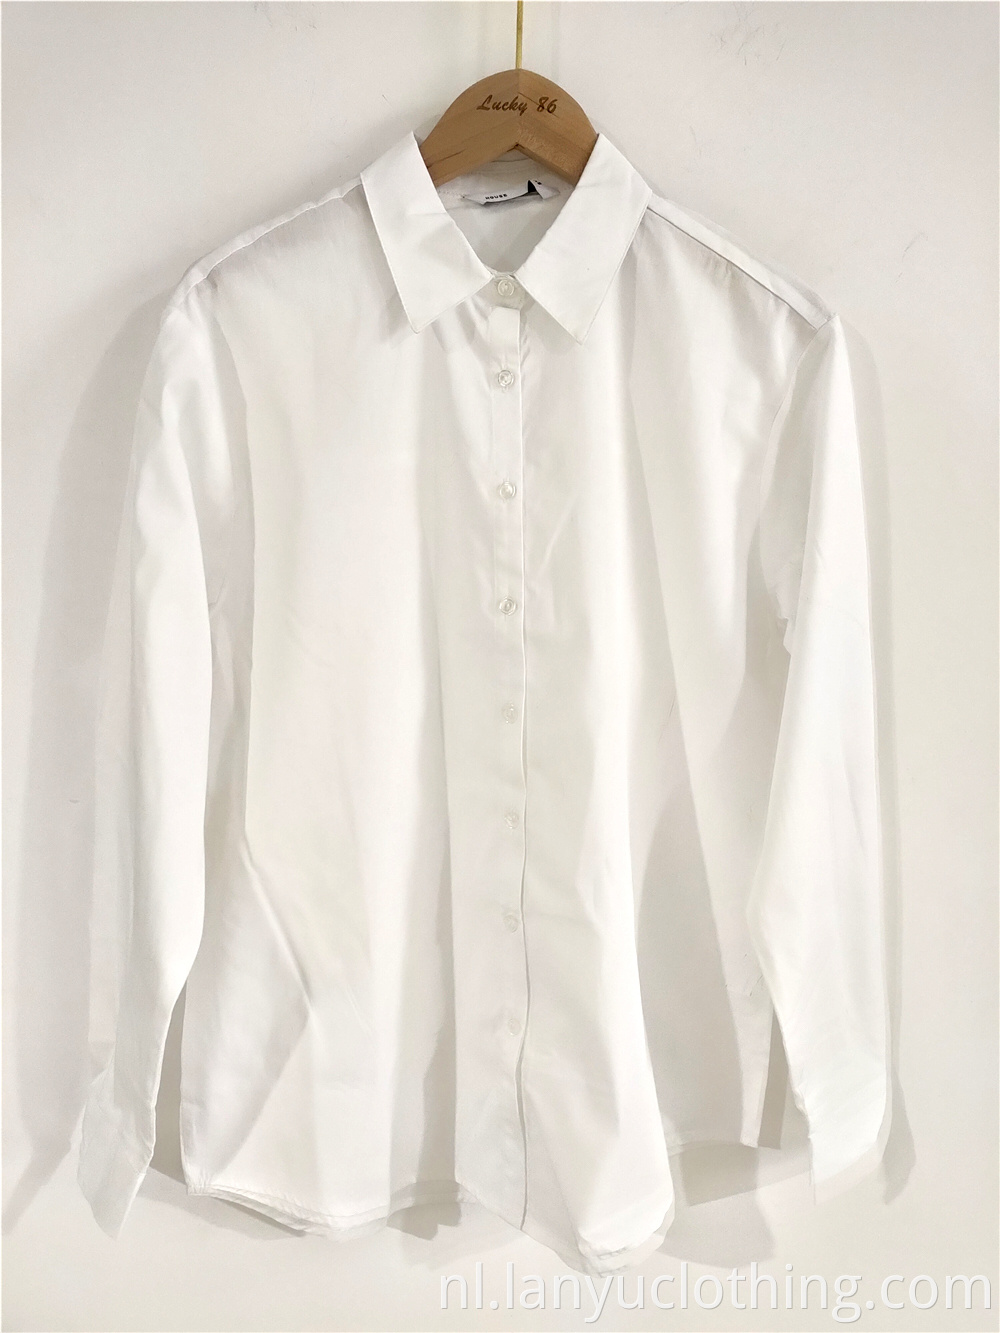 Women's Pure White Collar Shirt